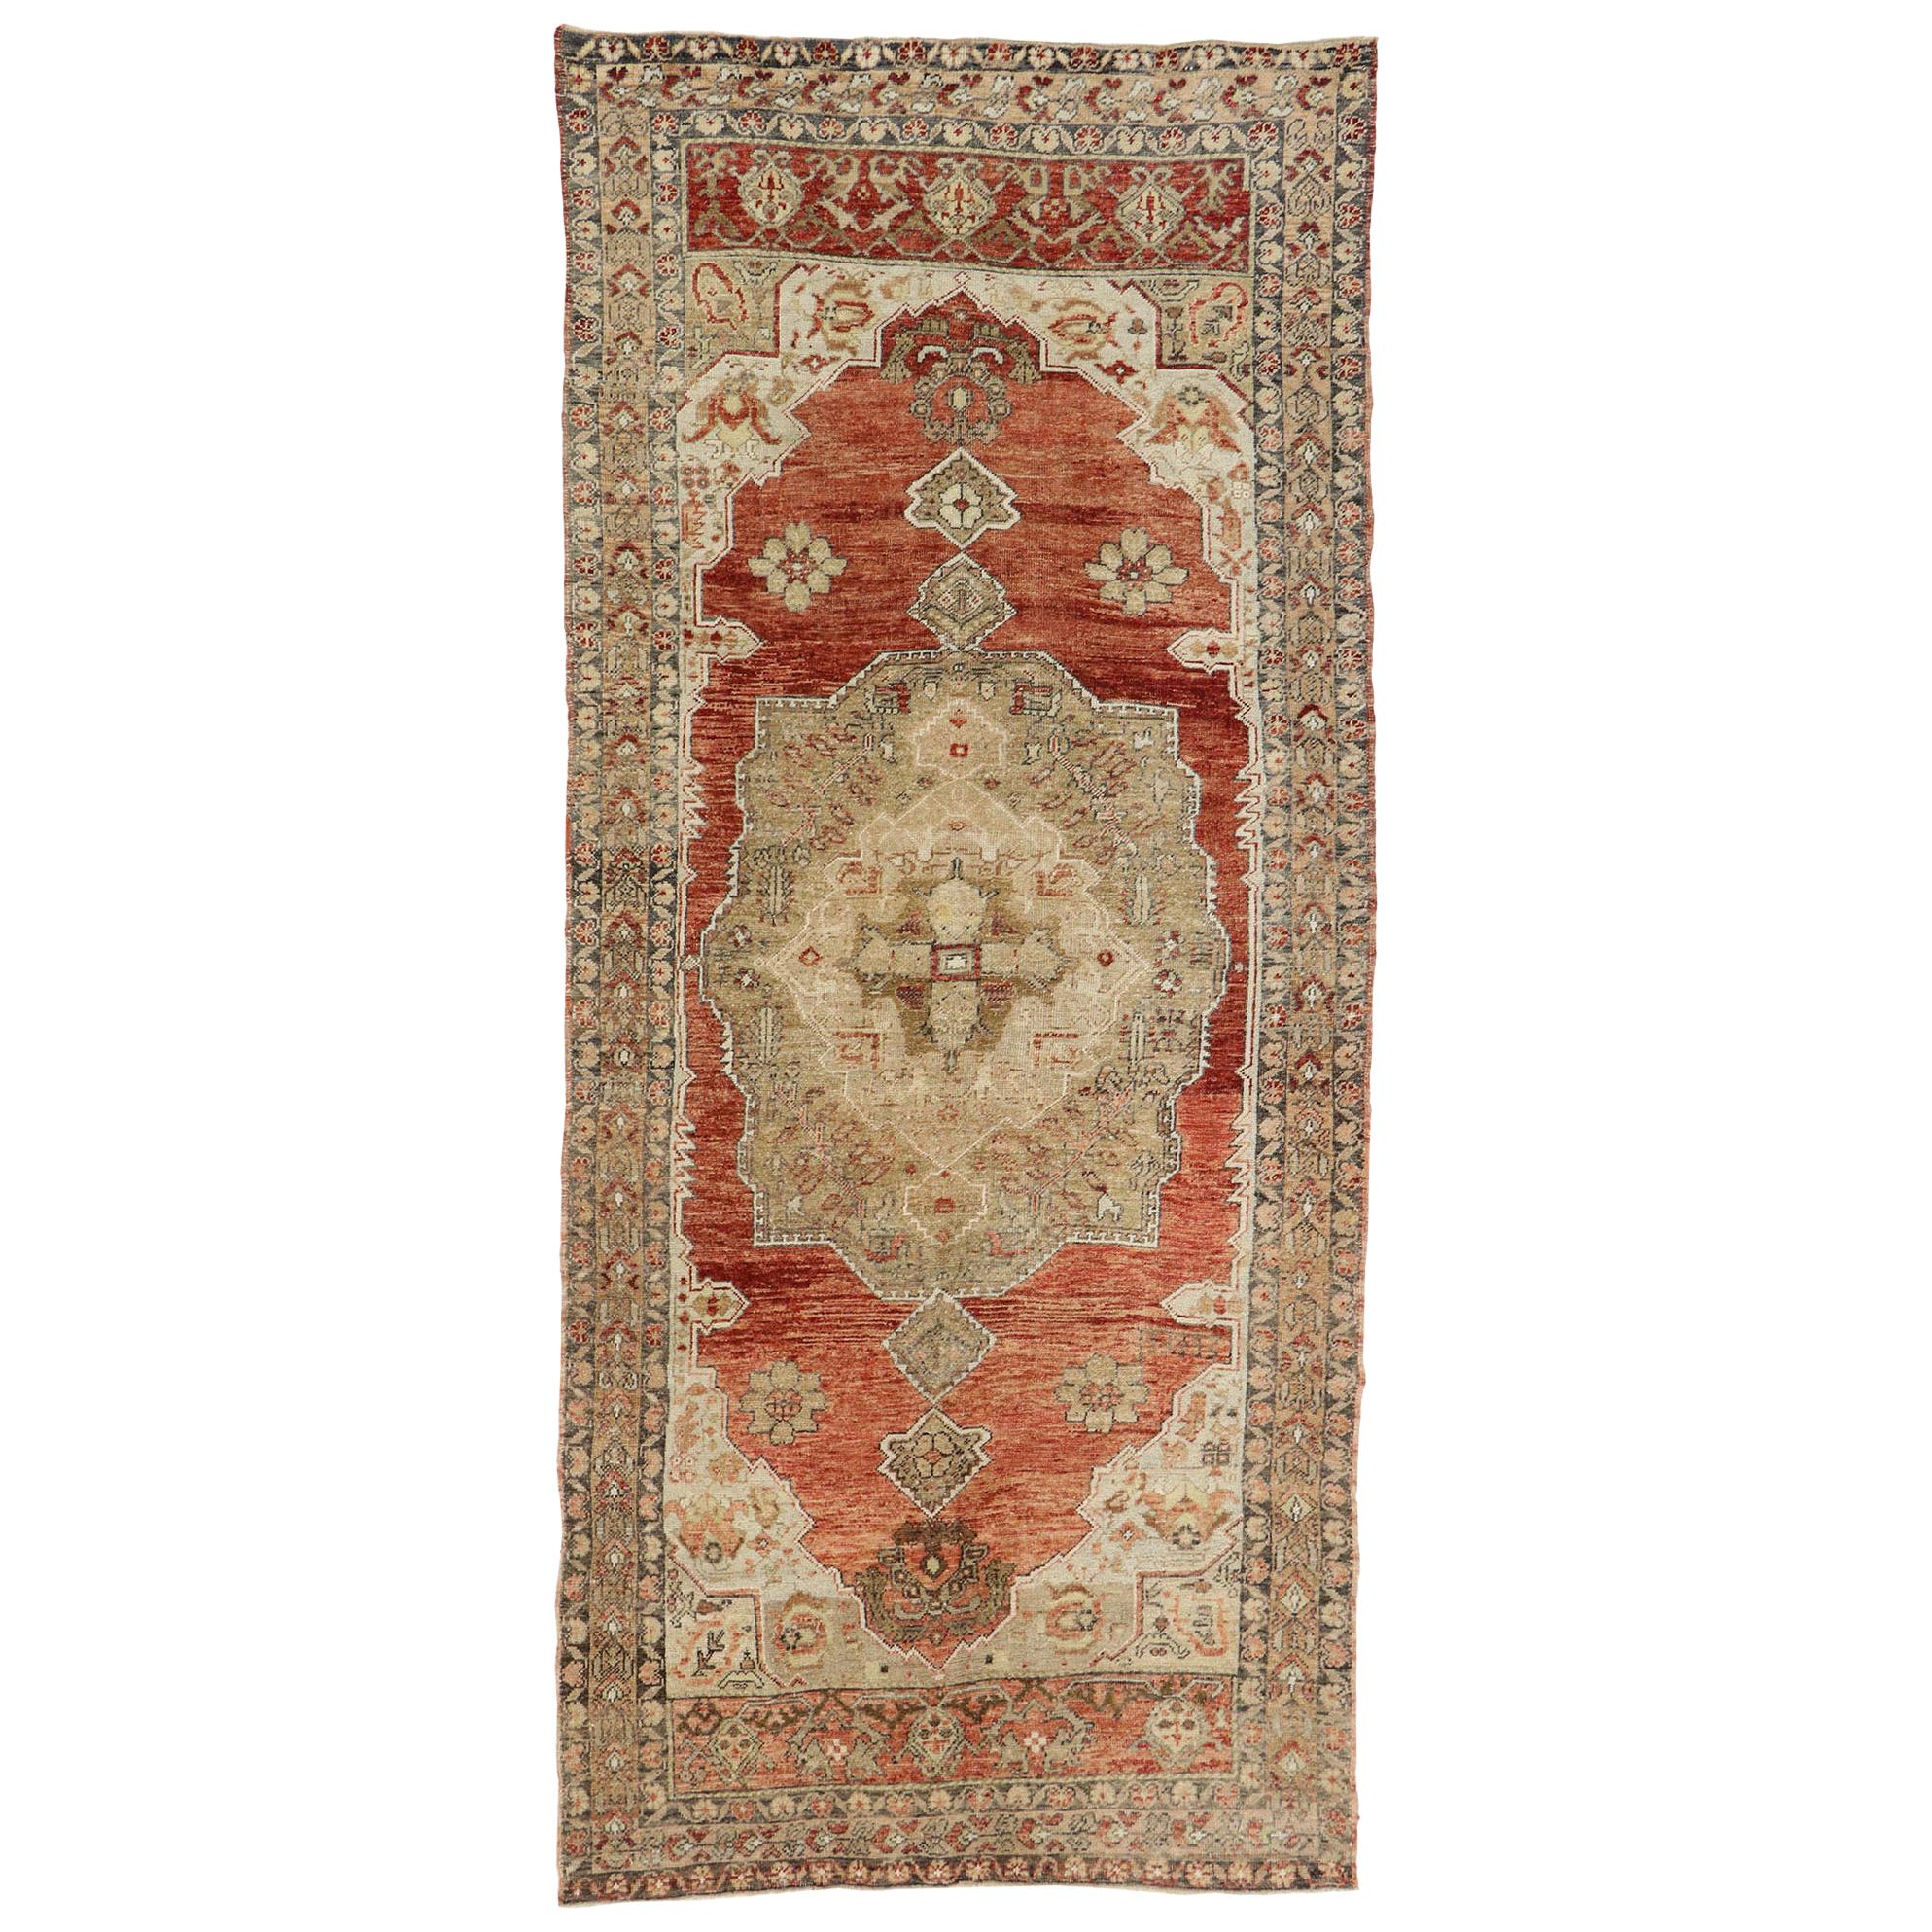 Vieux tapis turc Oushak Gallery de style colonial espagnol rustique